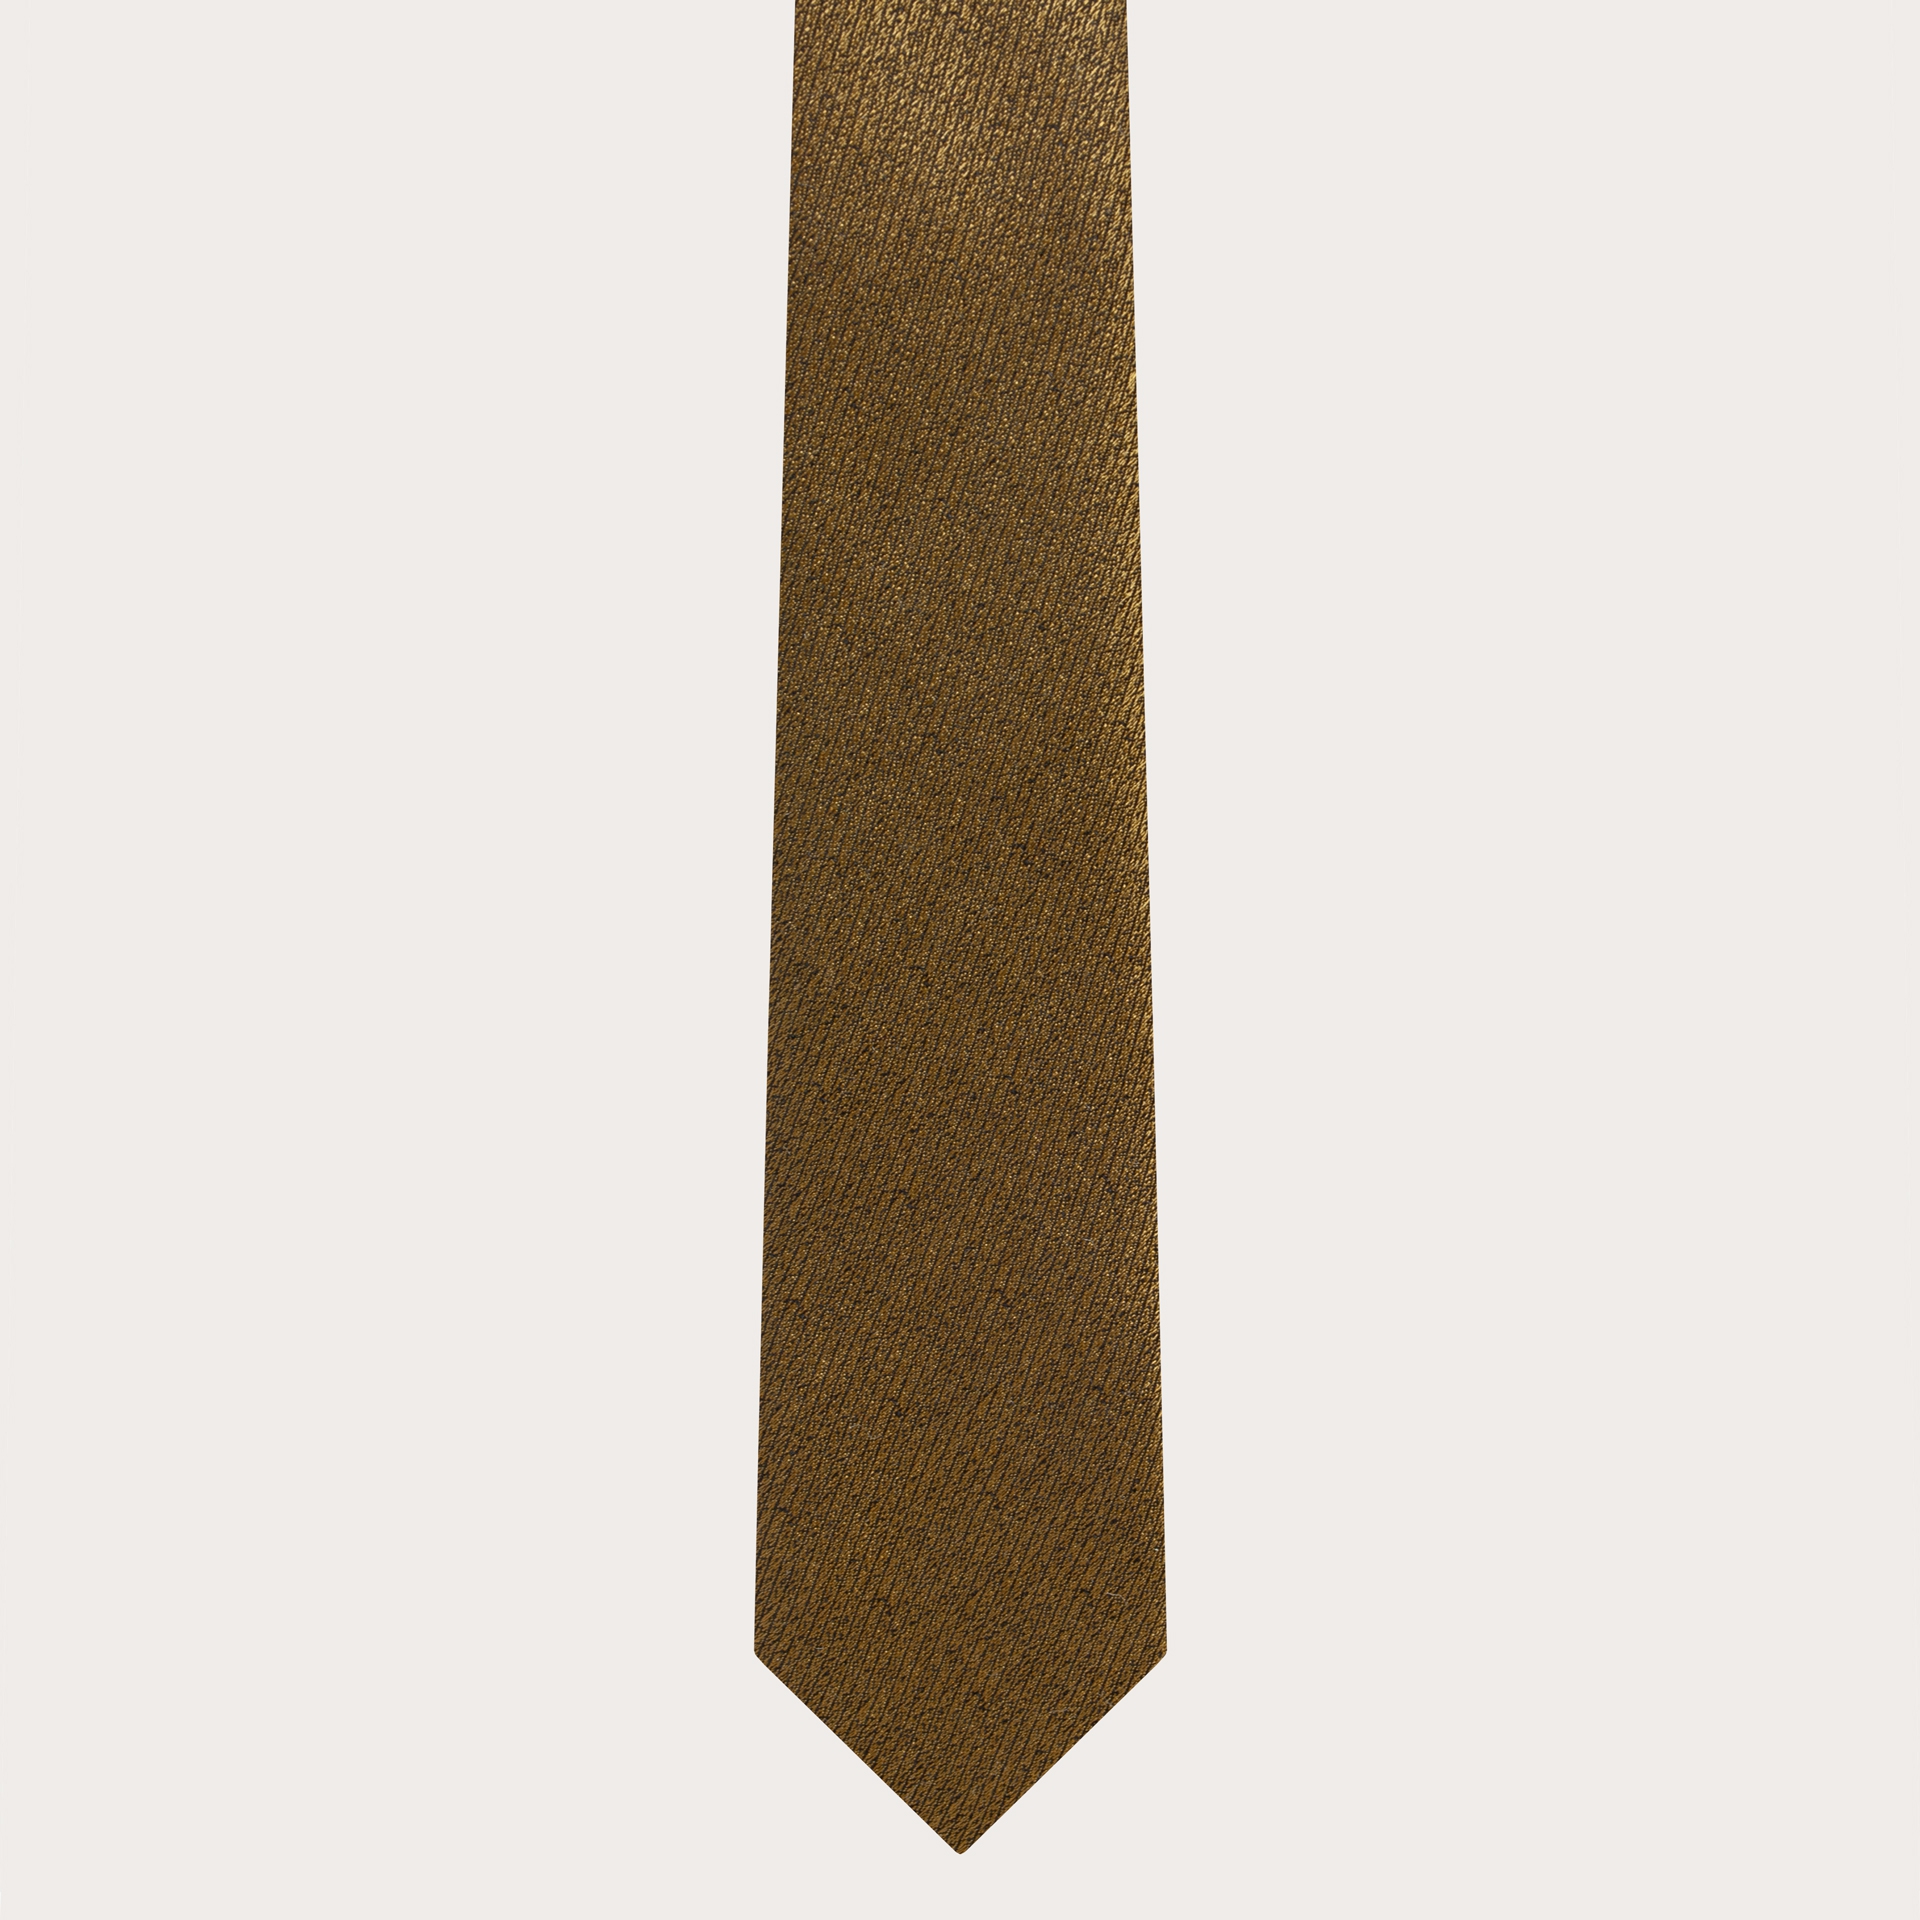 BRUCLE Elegante corbata fina de seda jacquard dorado irisado